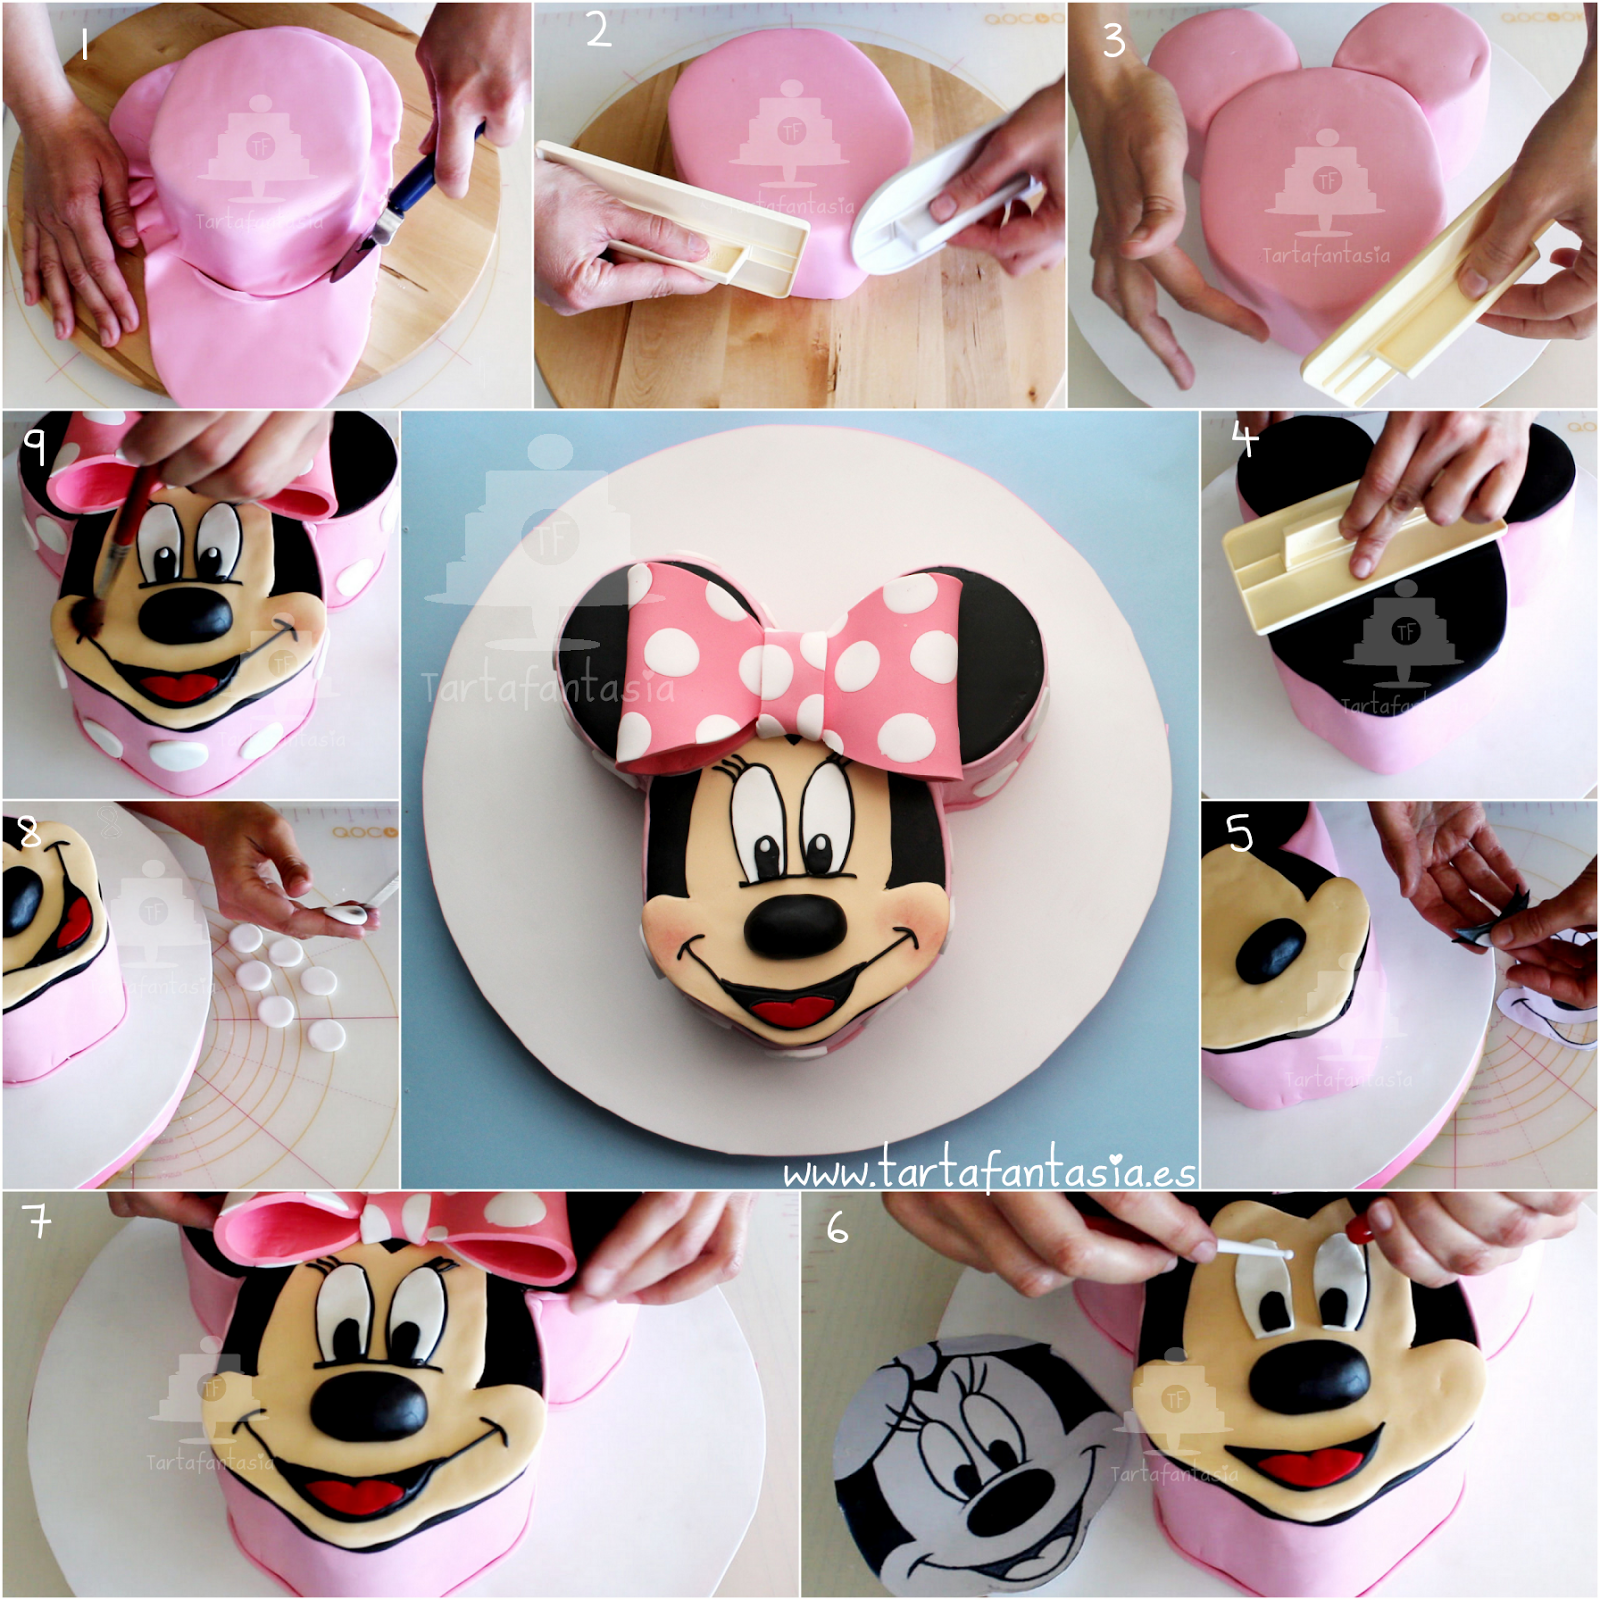 Cómo hacer unas orejas de Minnie Mouse